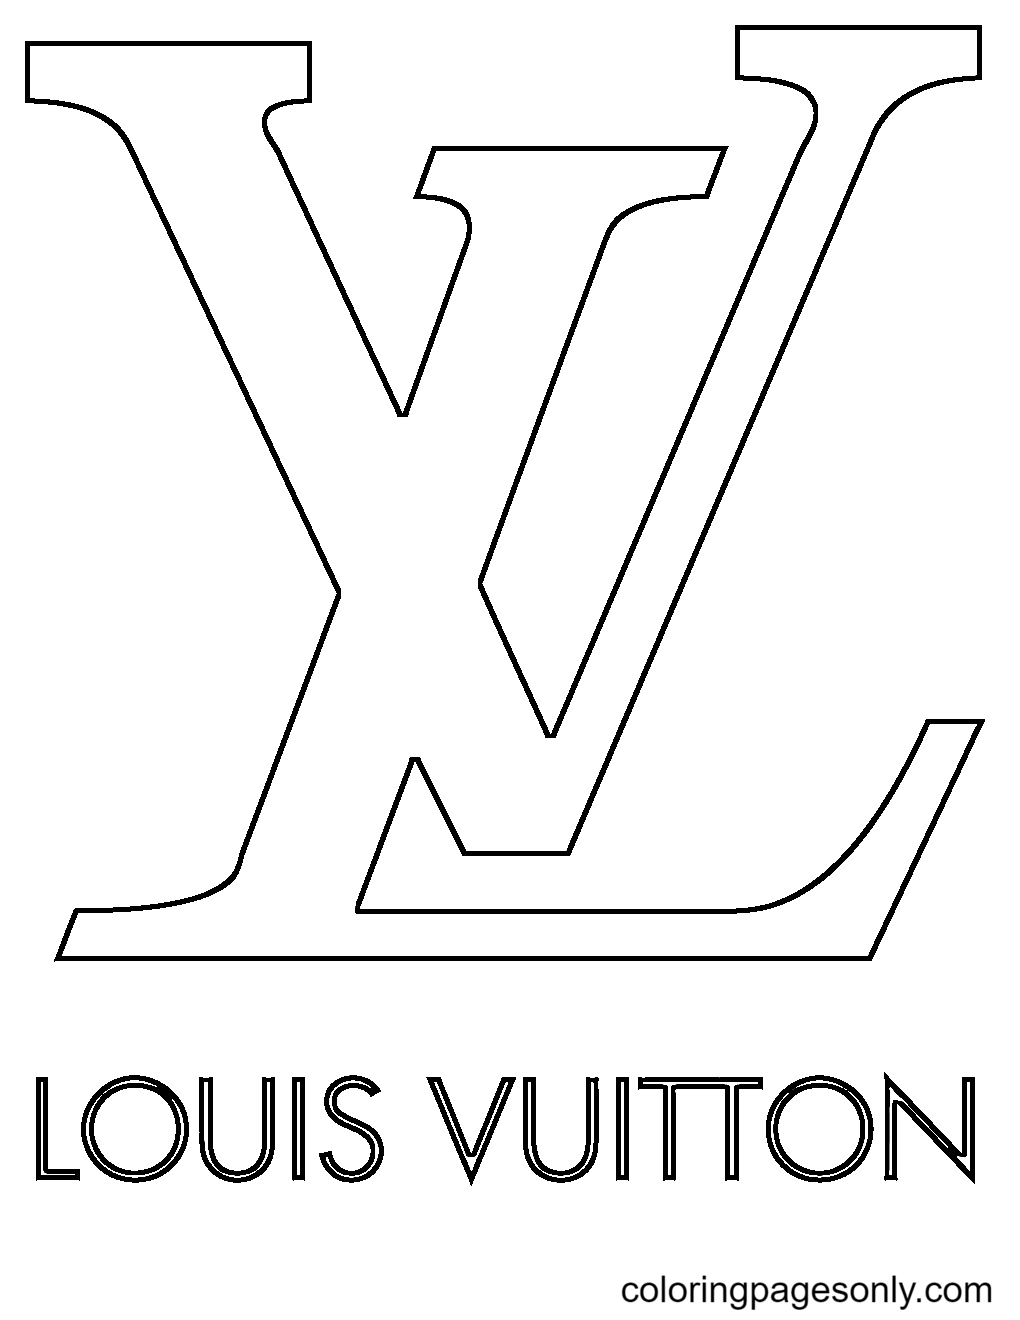 صفحة تلوين شعار لويس فويتون